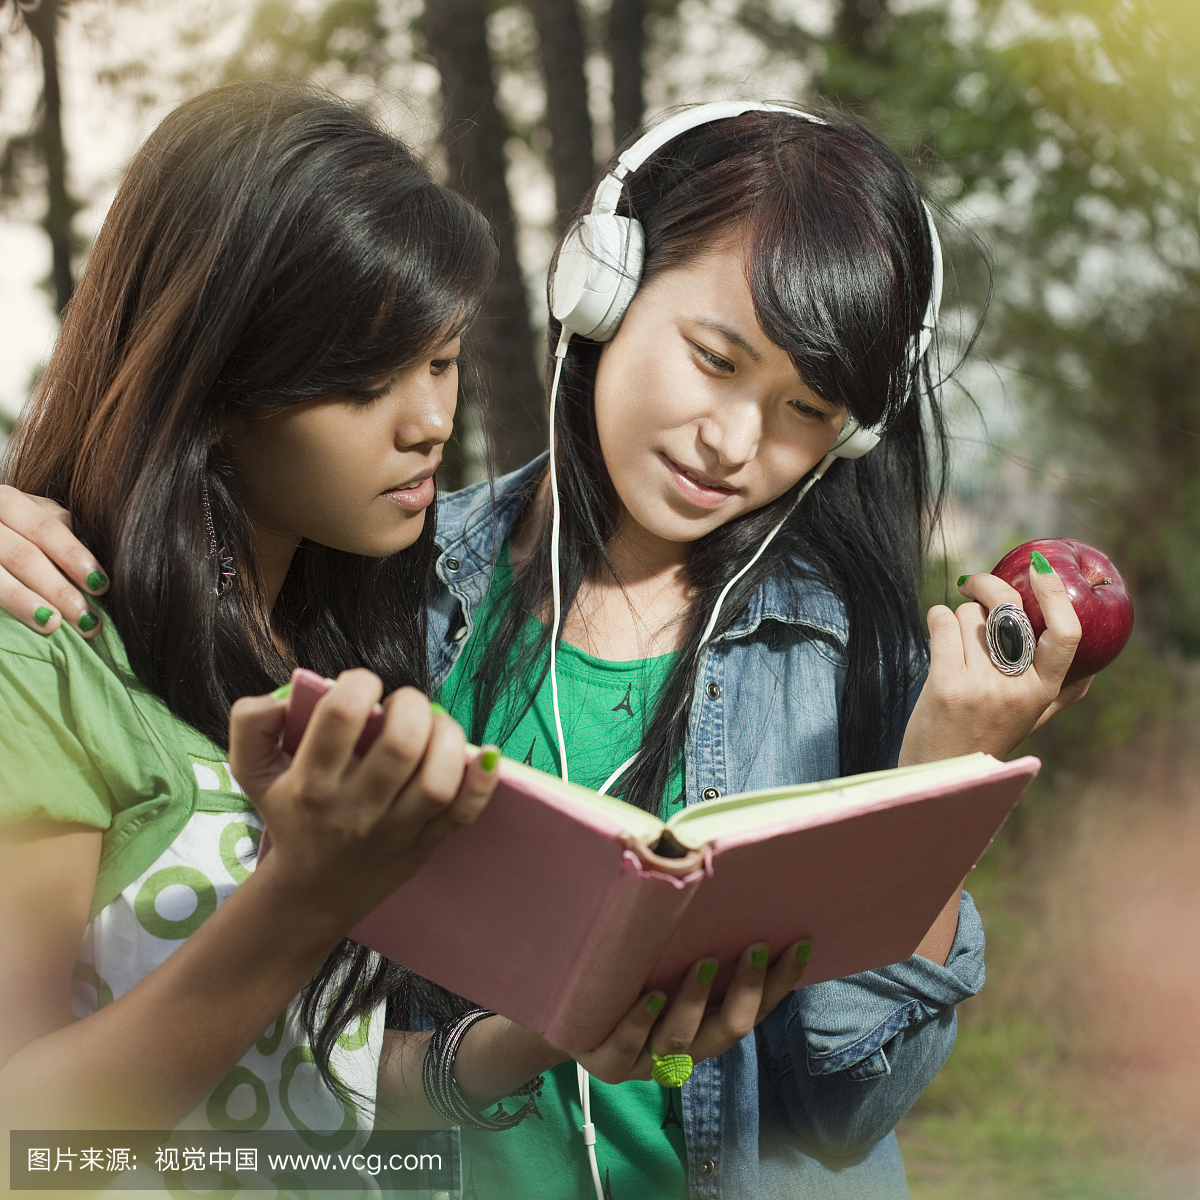 两个来自不同民族的快乐女孩在一起学习。